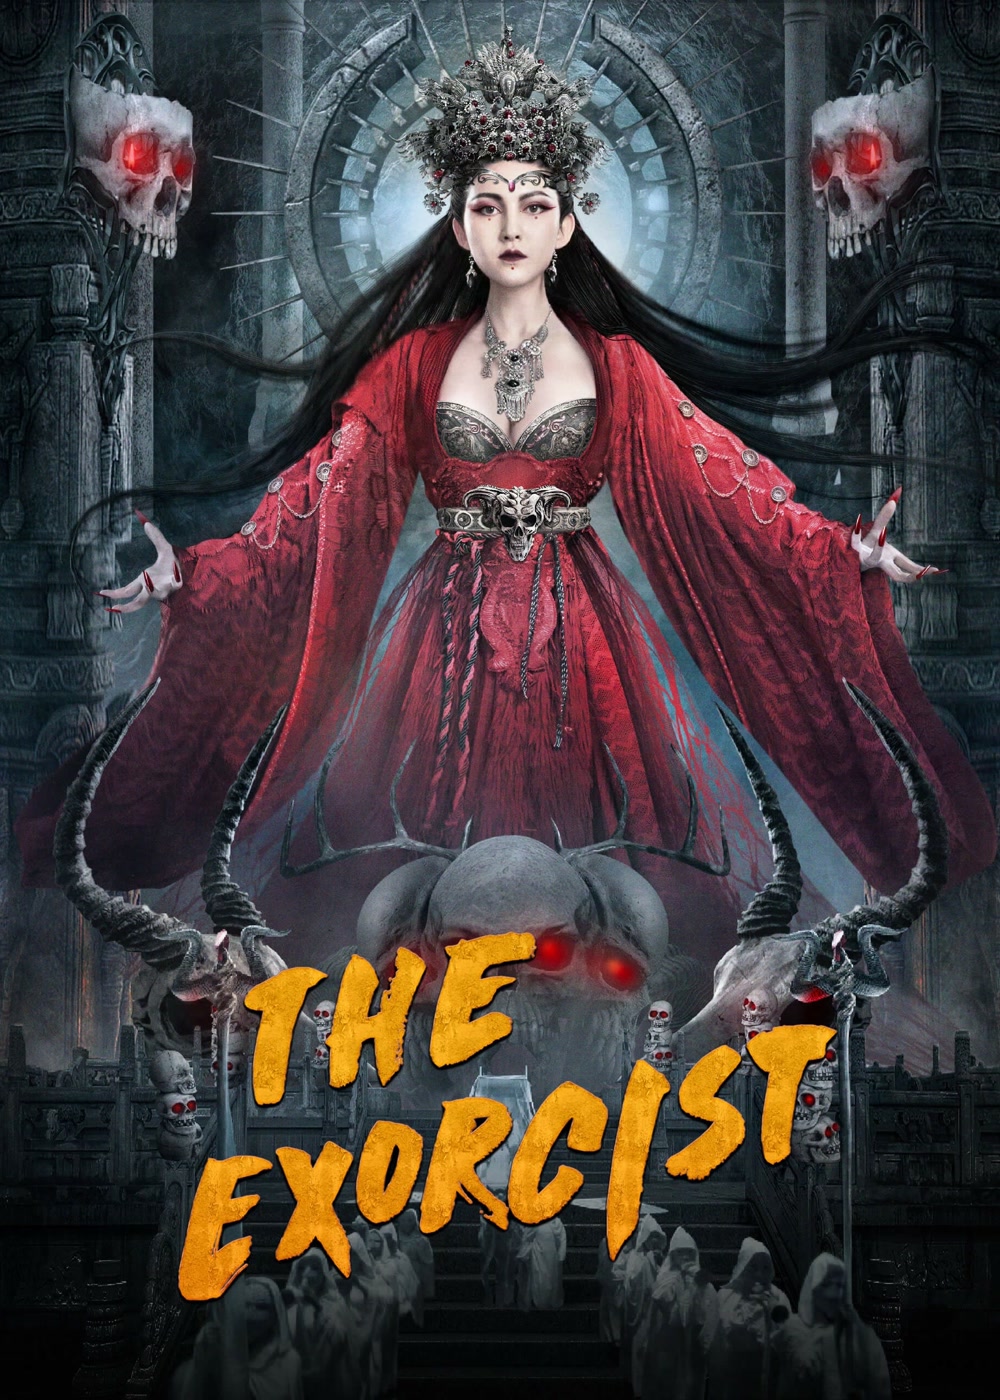 مشاهدة فيلم The exorcist 2022 مترجم